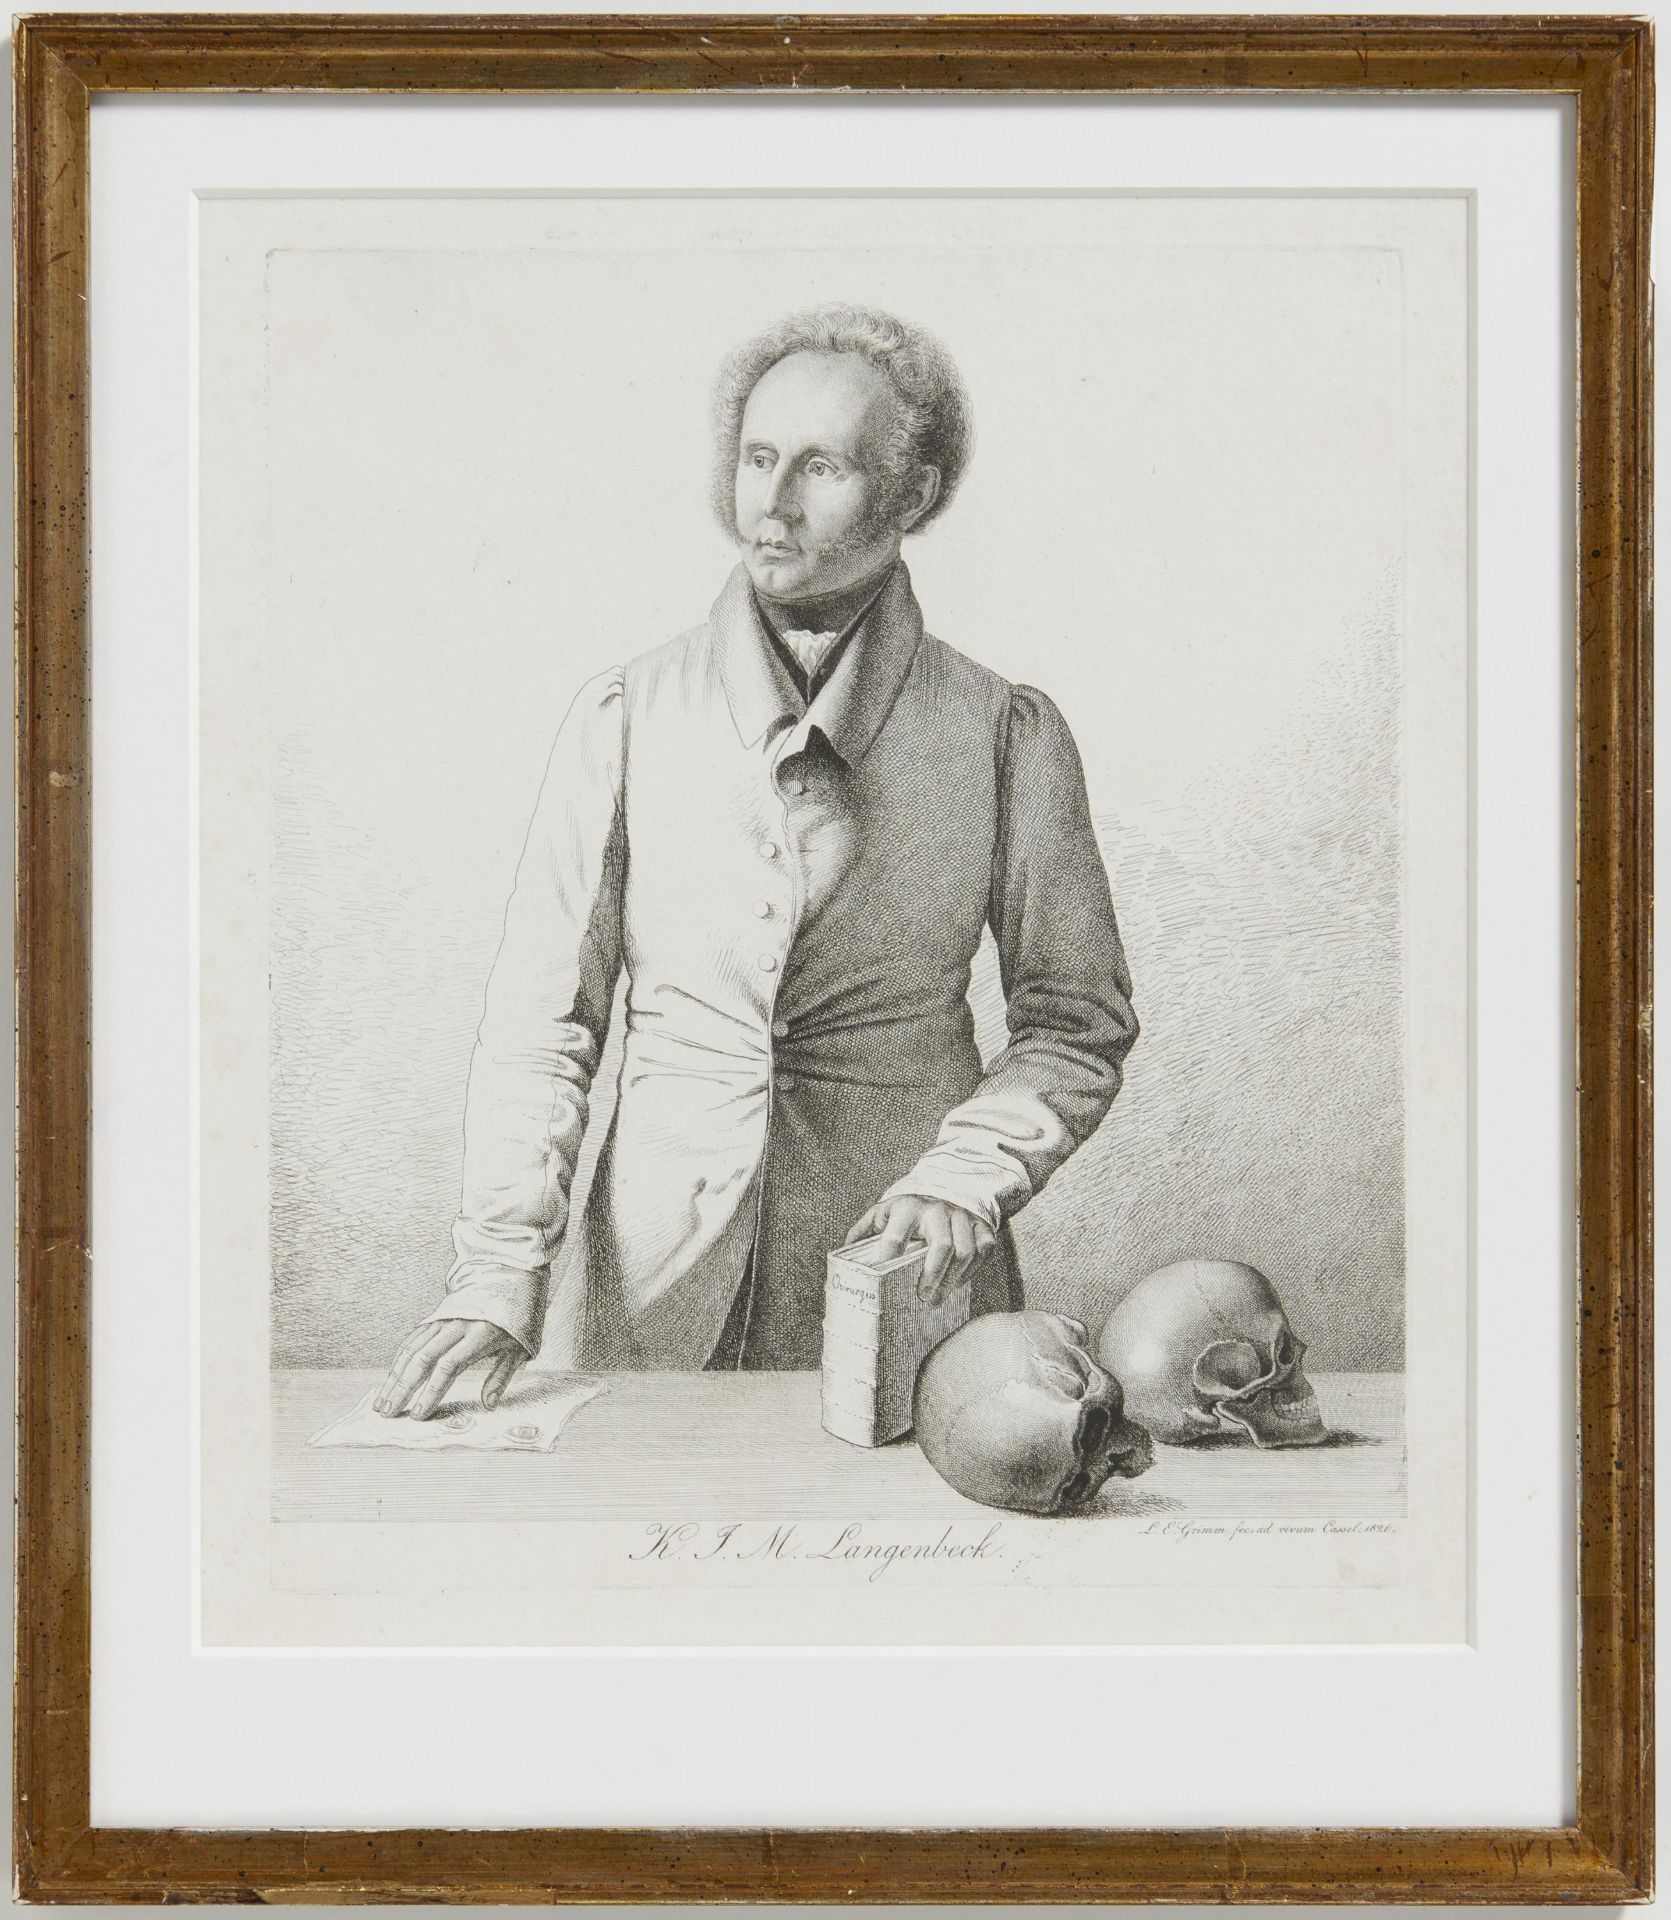 BILDNIS DES AUGENARZTES KONRAD JOHANN MARTIN LANGENBECK. Datierung: Kassel. 1826. Meister/Entwerfer: - Bild 2 aus 4